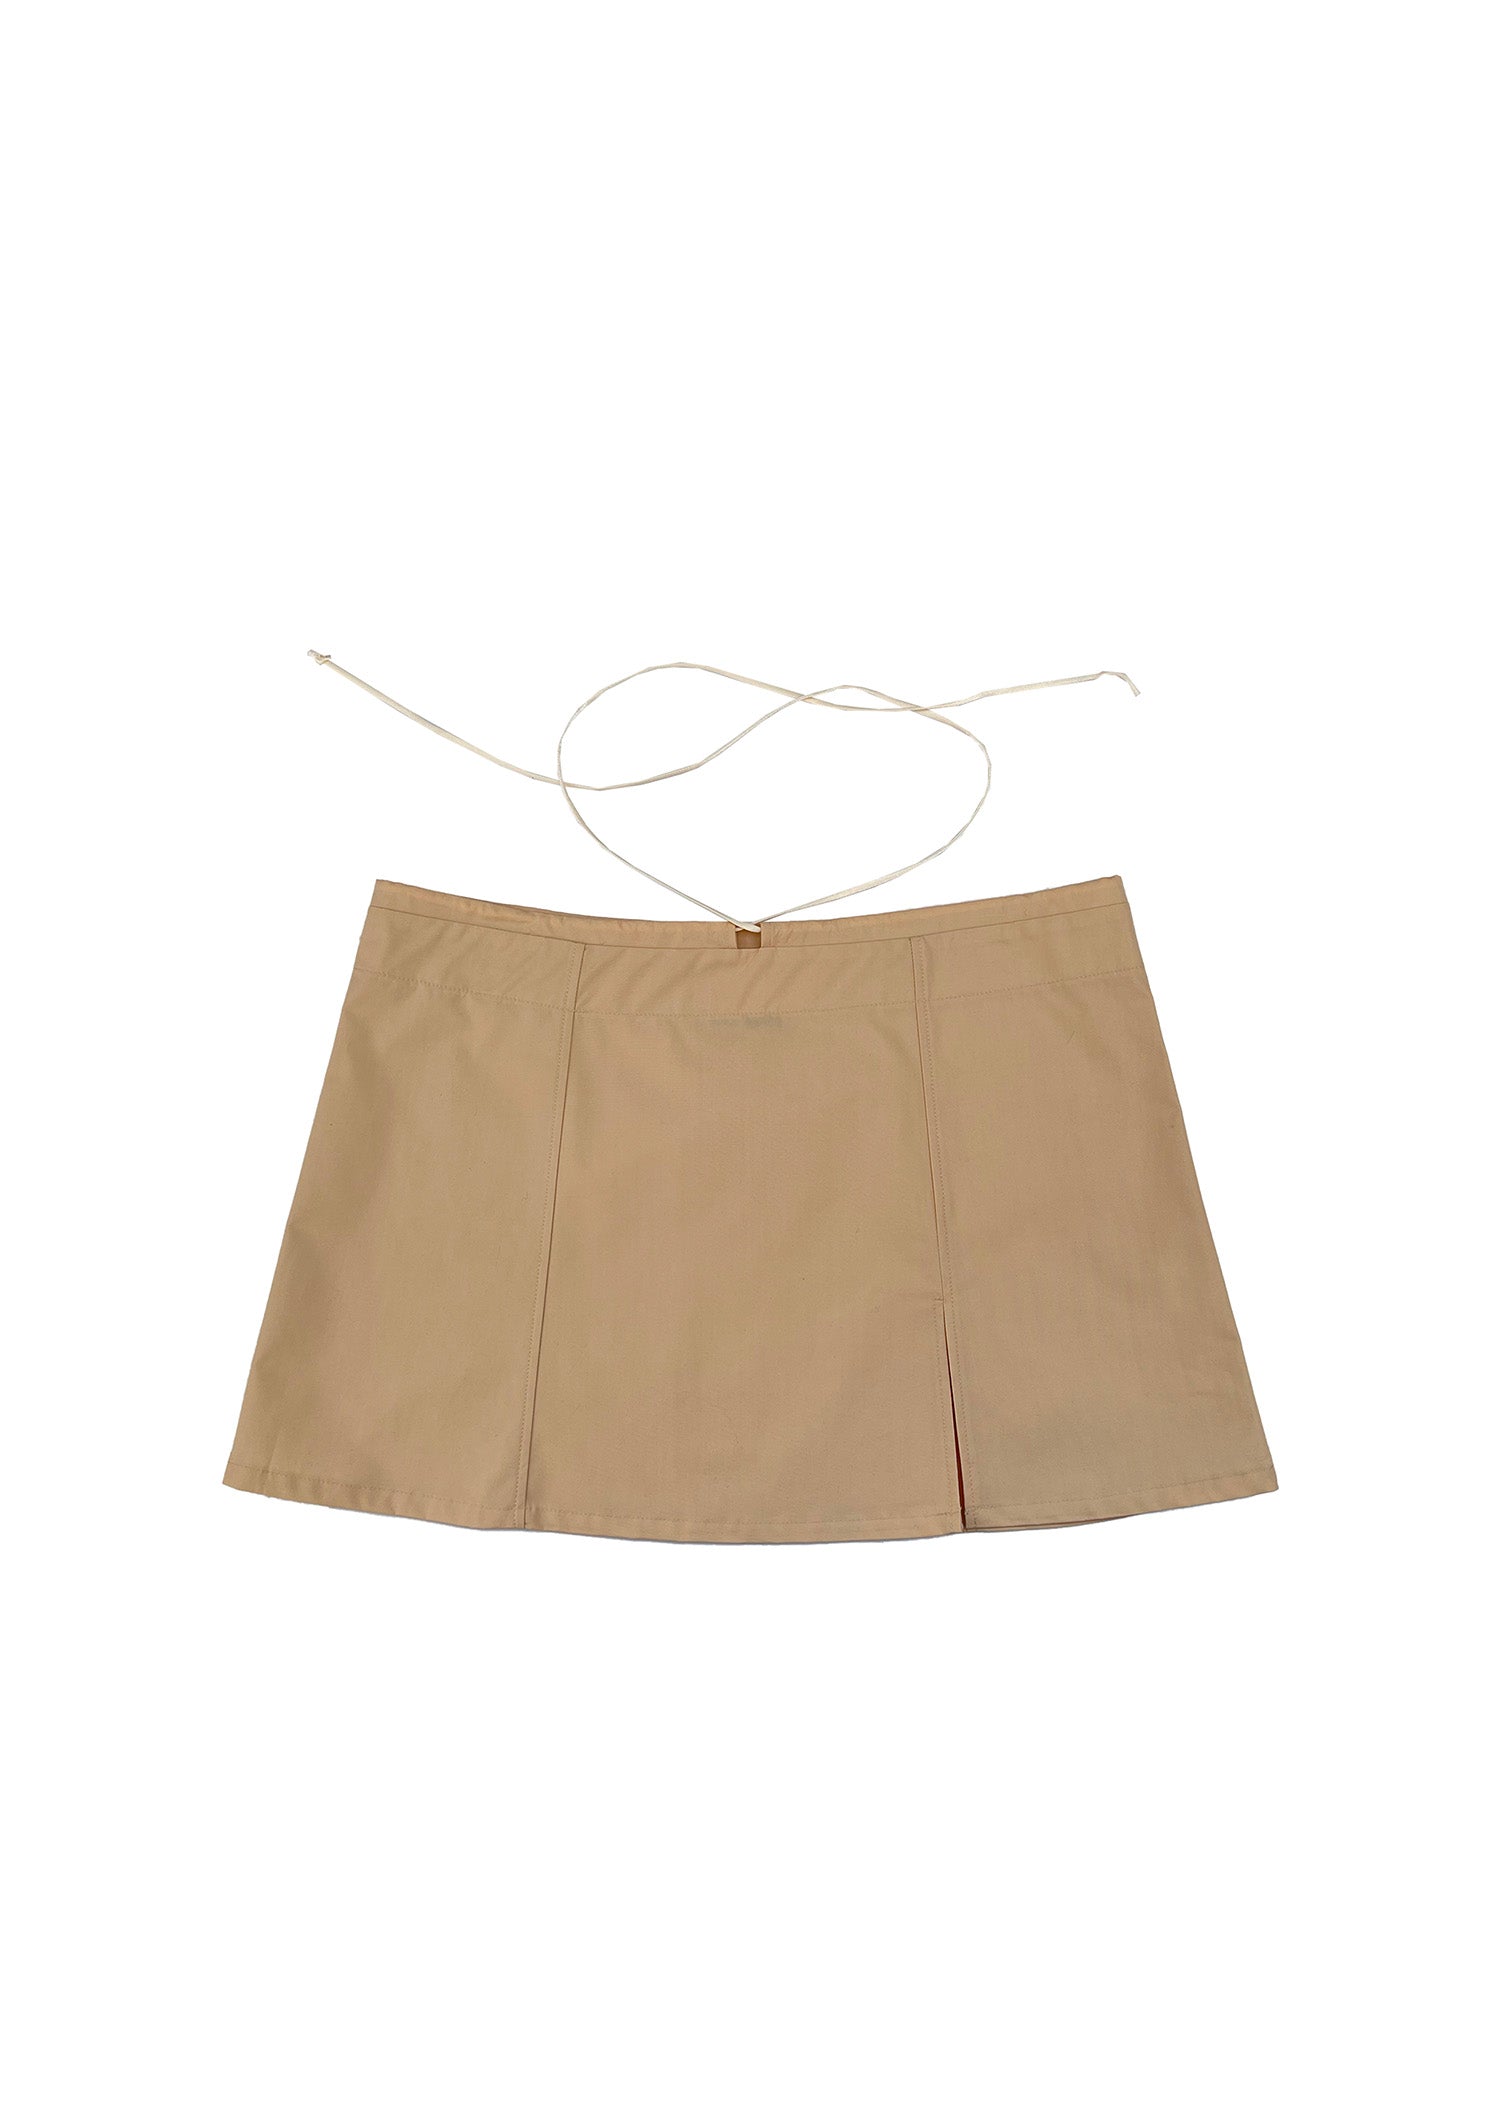 Mini skirt, front view, unique